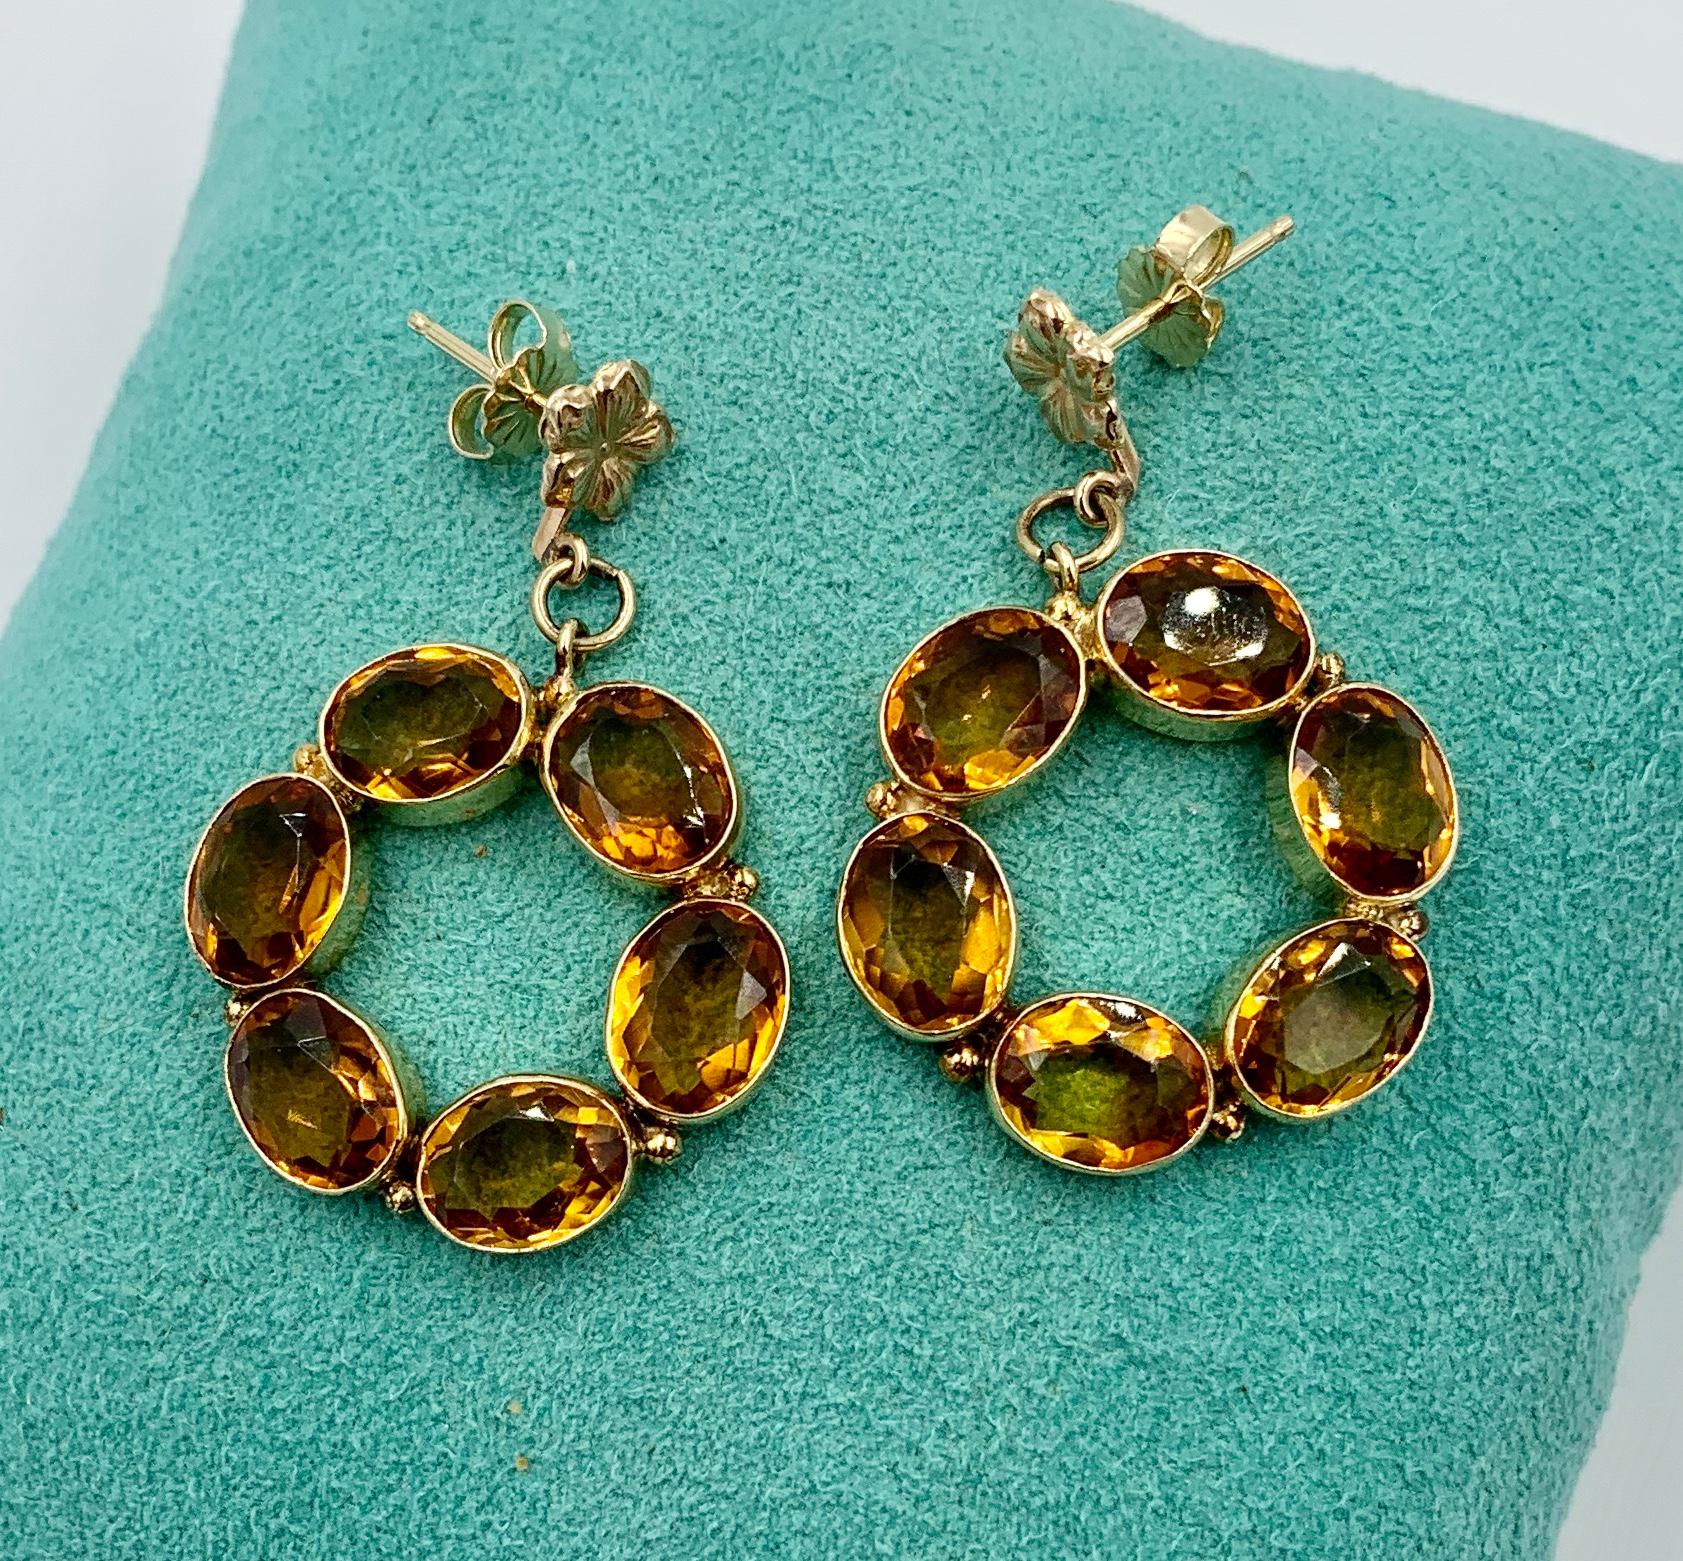 12 karat gold earrings